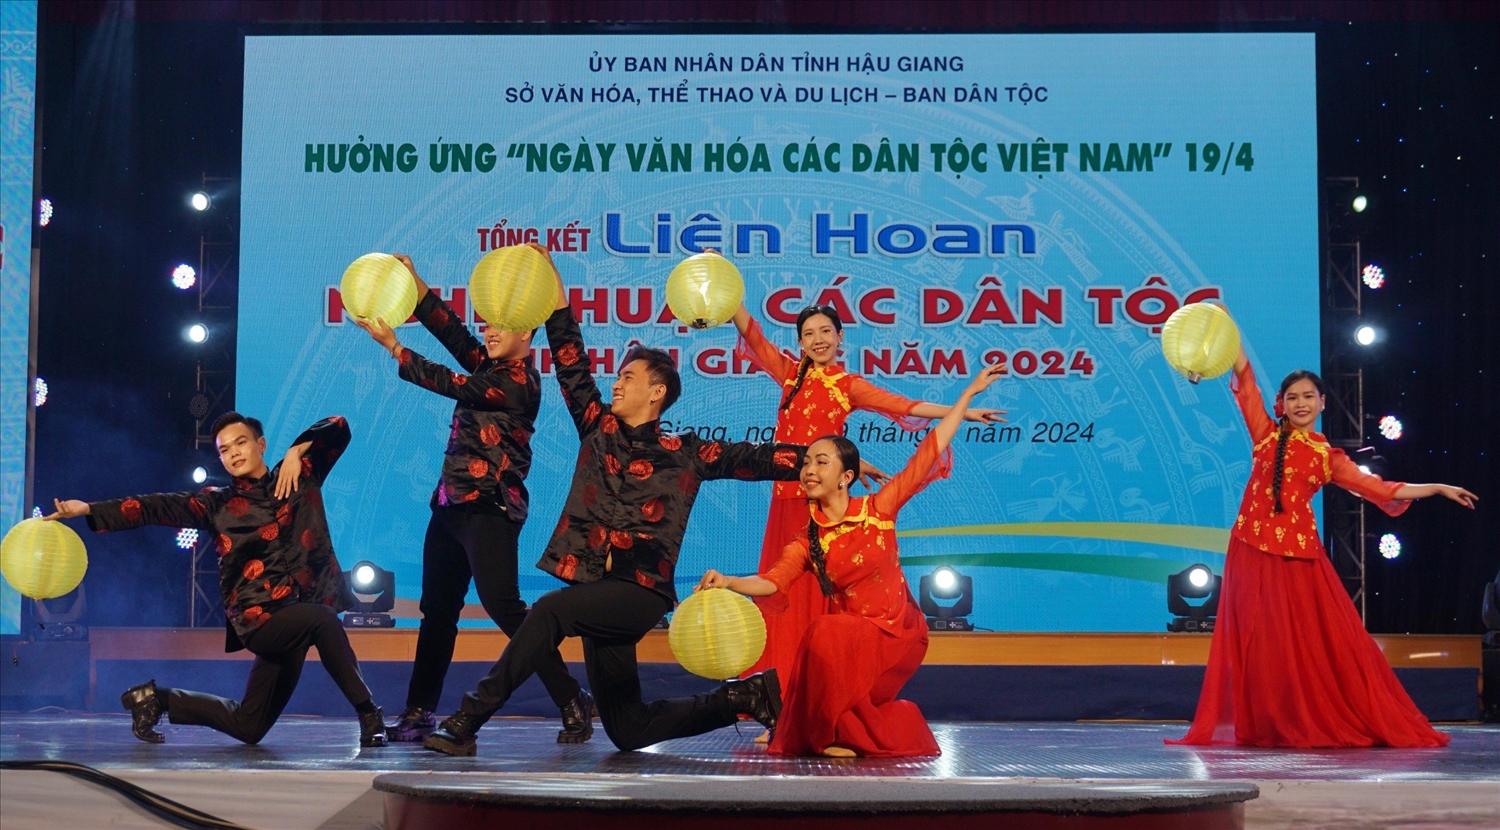 Tiết mục múa “Hoa Từ đất” của huyện Long Mỹ với trang phục truyền thống của người Hoa, đã đạt giải cao tại đêm Liên hoan nghệ thuật các dân tộc tỉnh Hậu Giang năm 2024